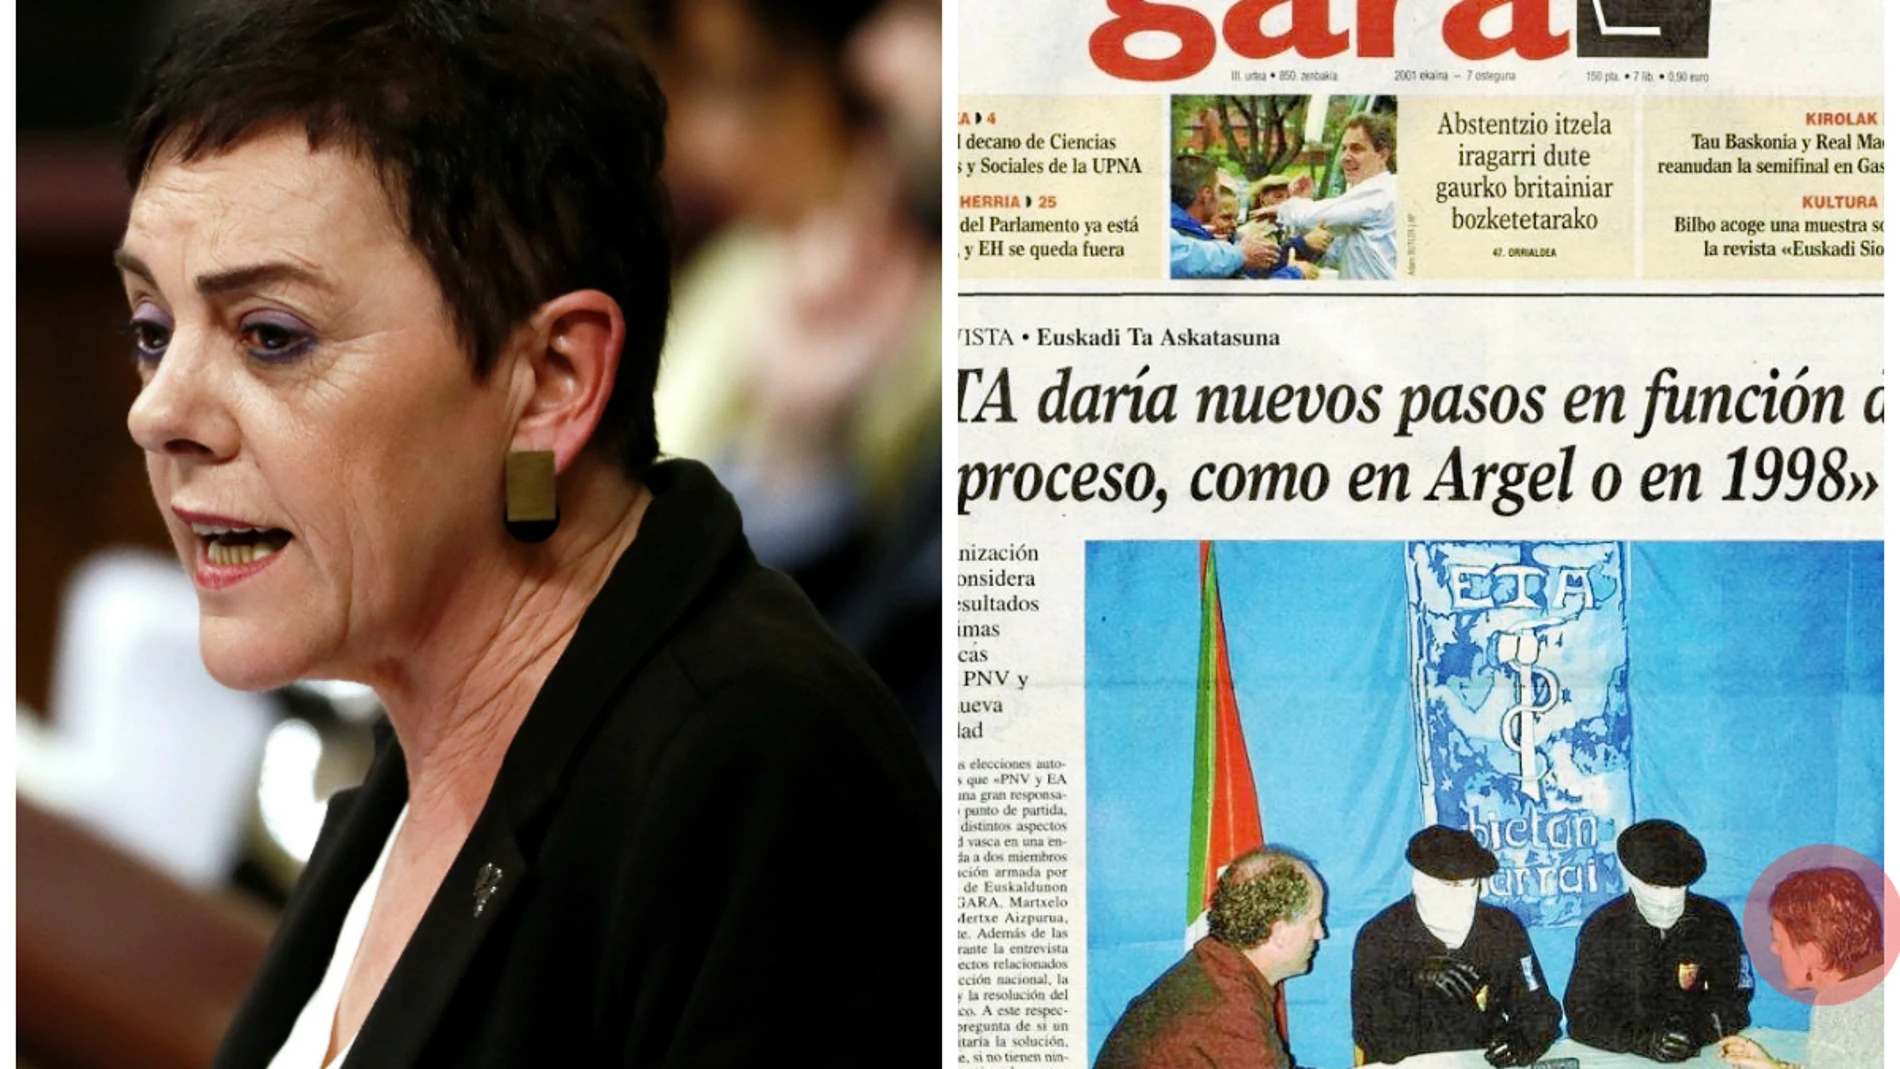 La portavoz de EH Bildu junto a la portada del " Gara" de 2001 en la que entrevista a los encapuchados